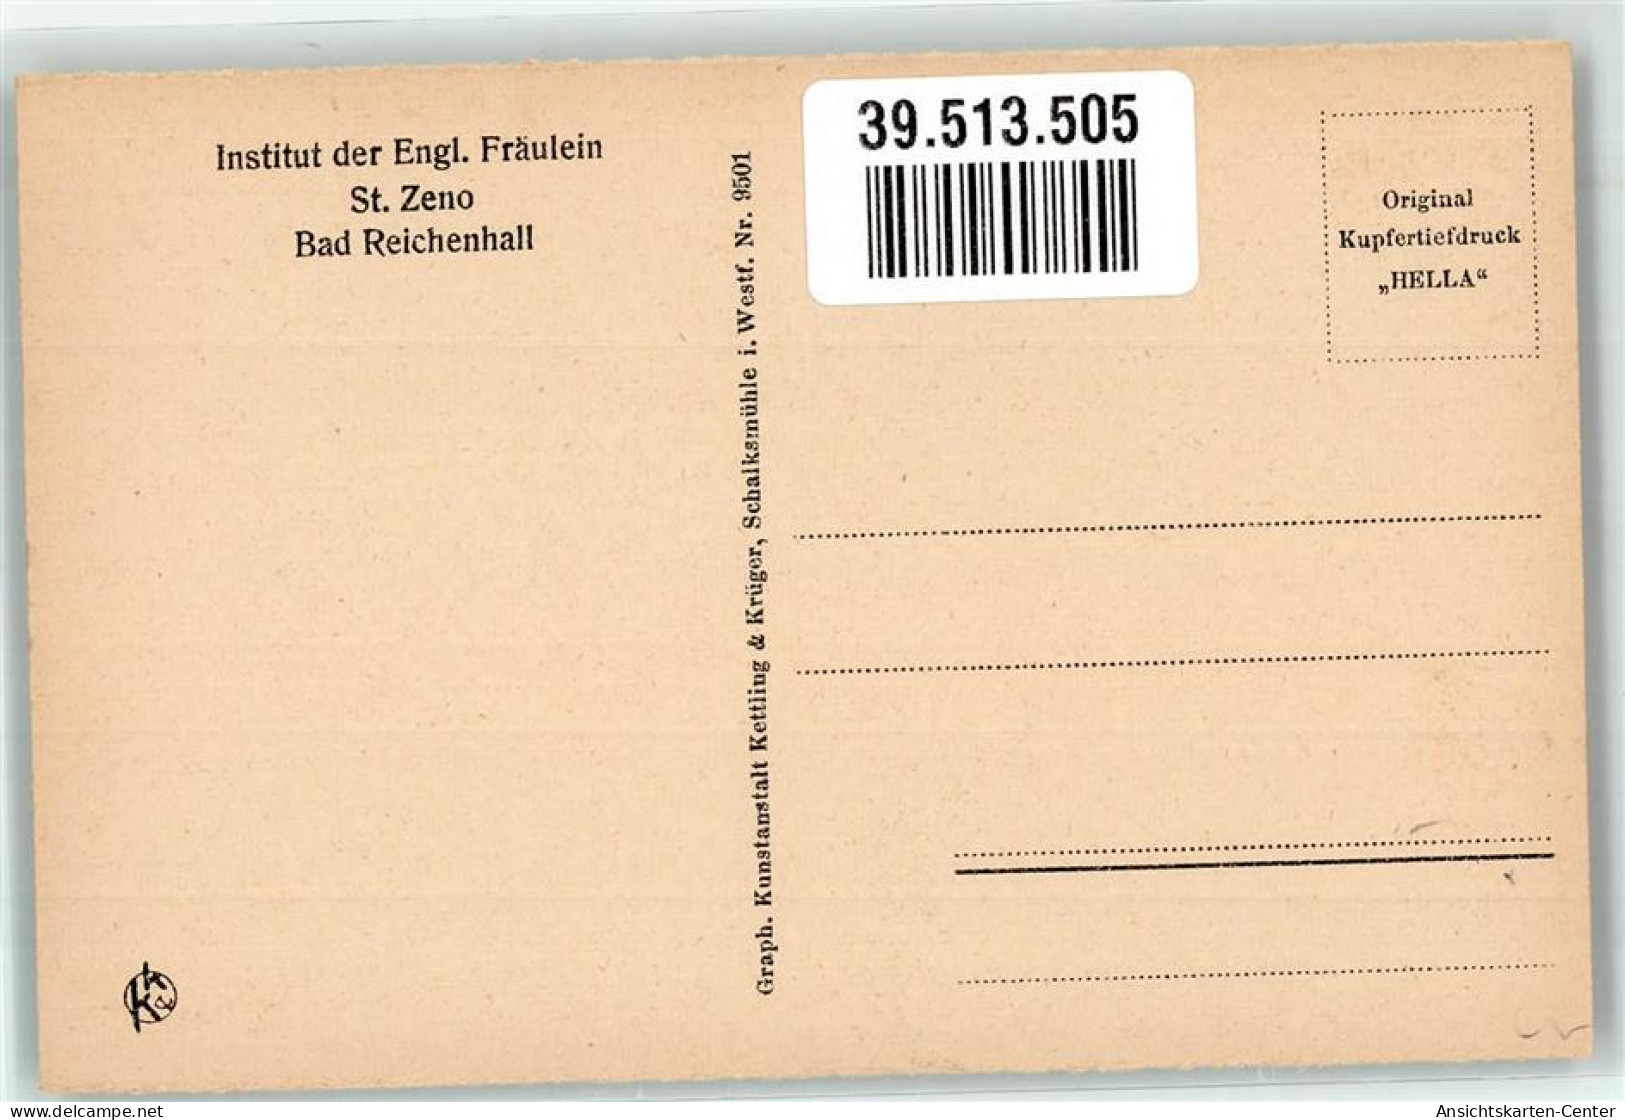 39513505 - Bad Reichenhall - Bad Reichenhall